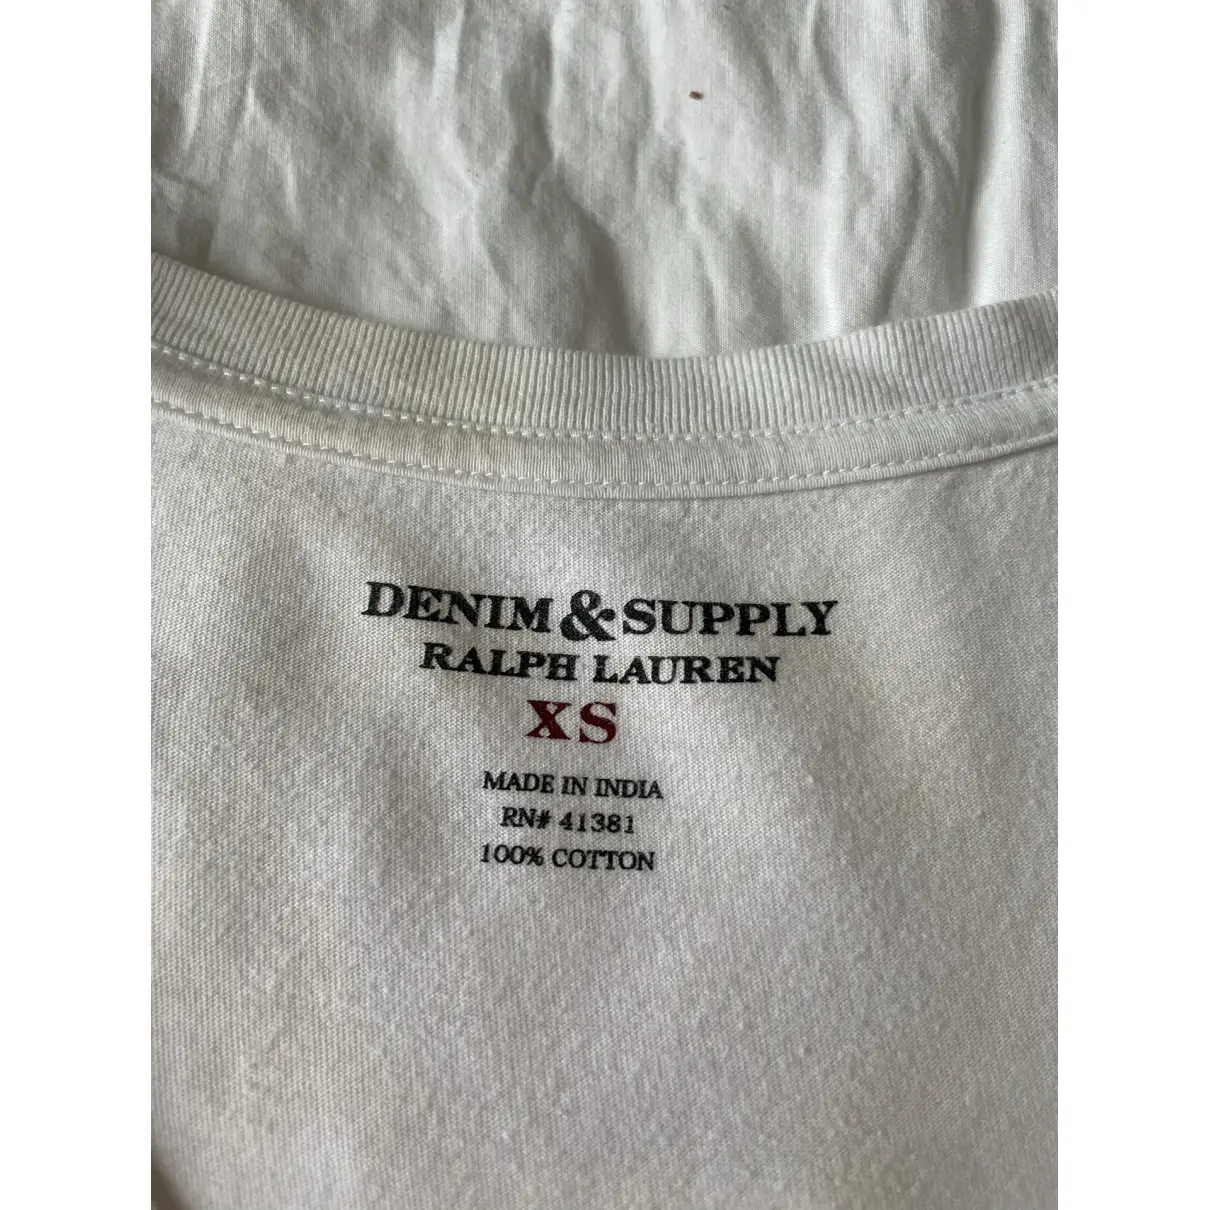 Buy Ralph Lauren Denim & Supply T-shirt online